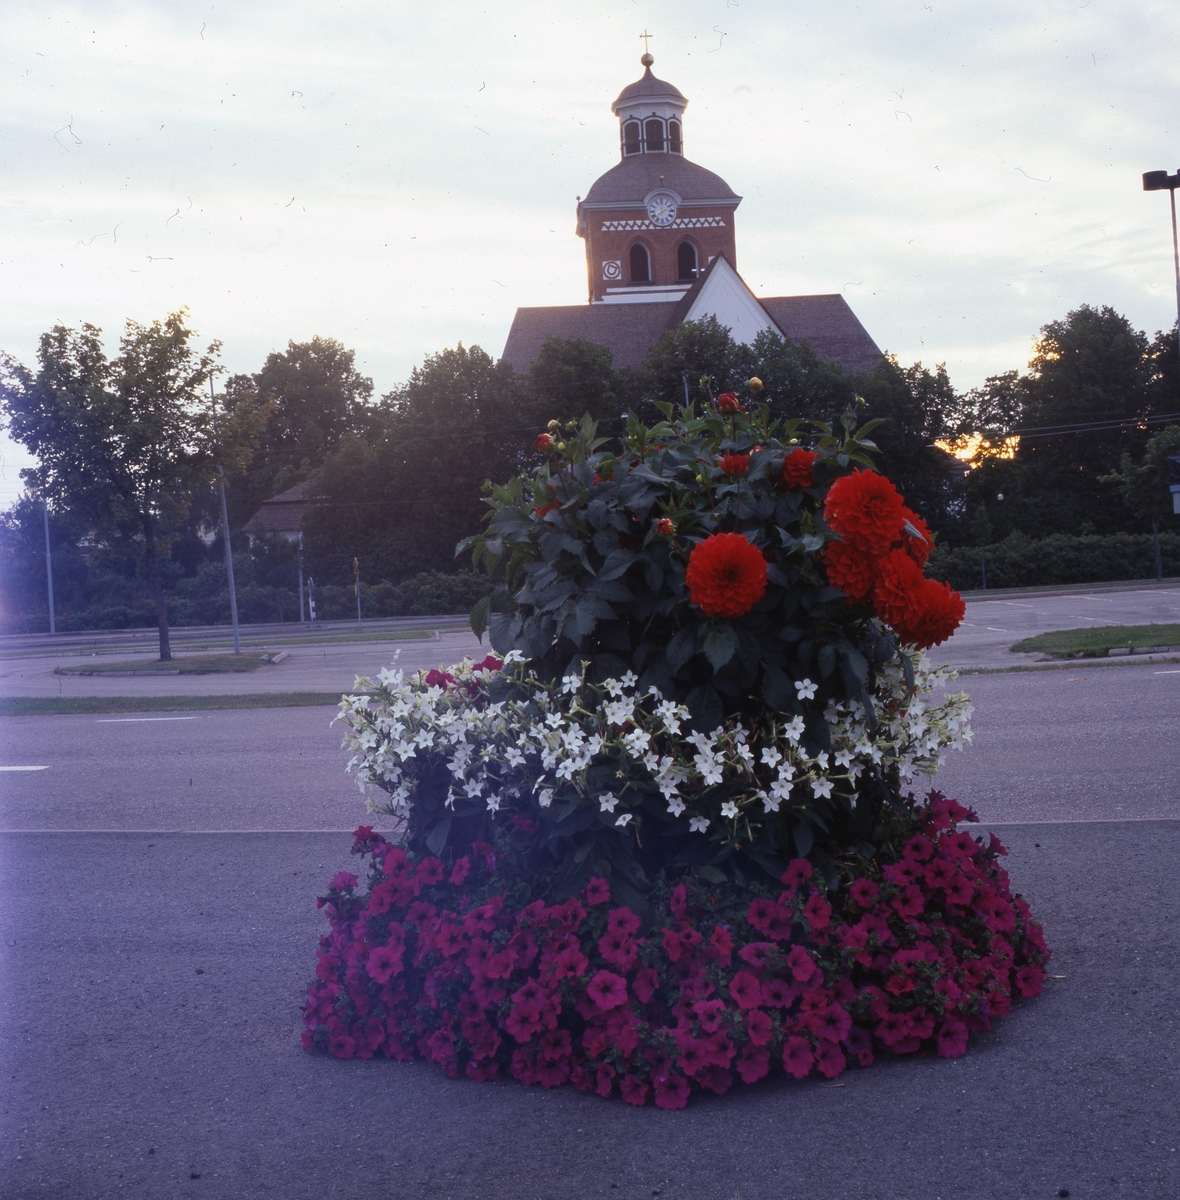 Praktfull blomsterurna med kyrkan i bakgrunden, Bollnäs 25 augusti 2001.